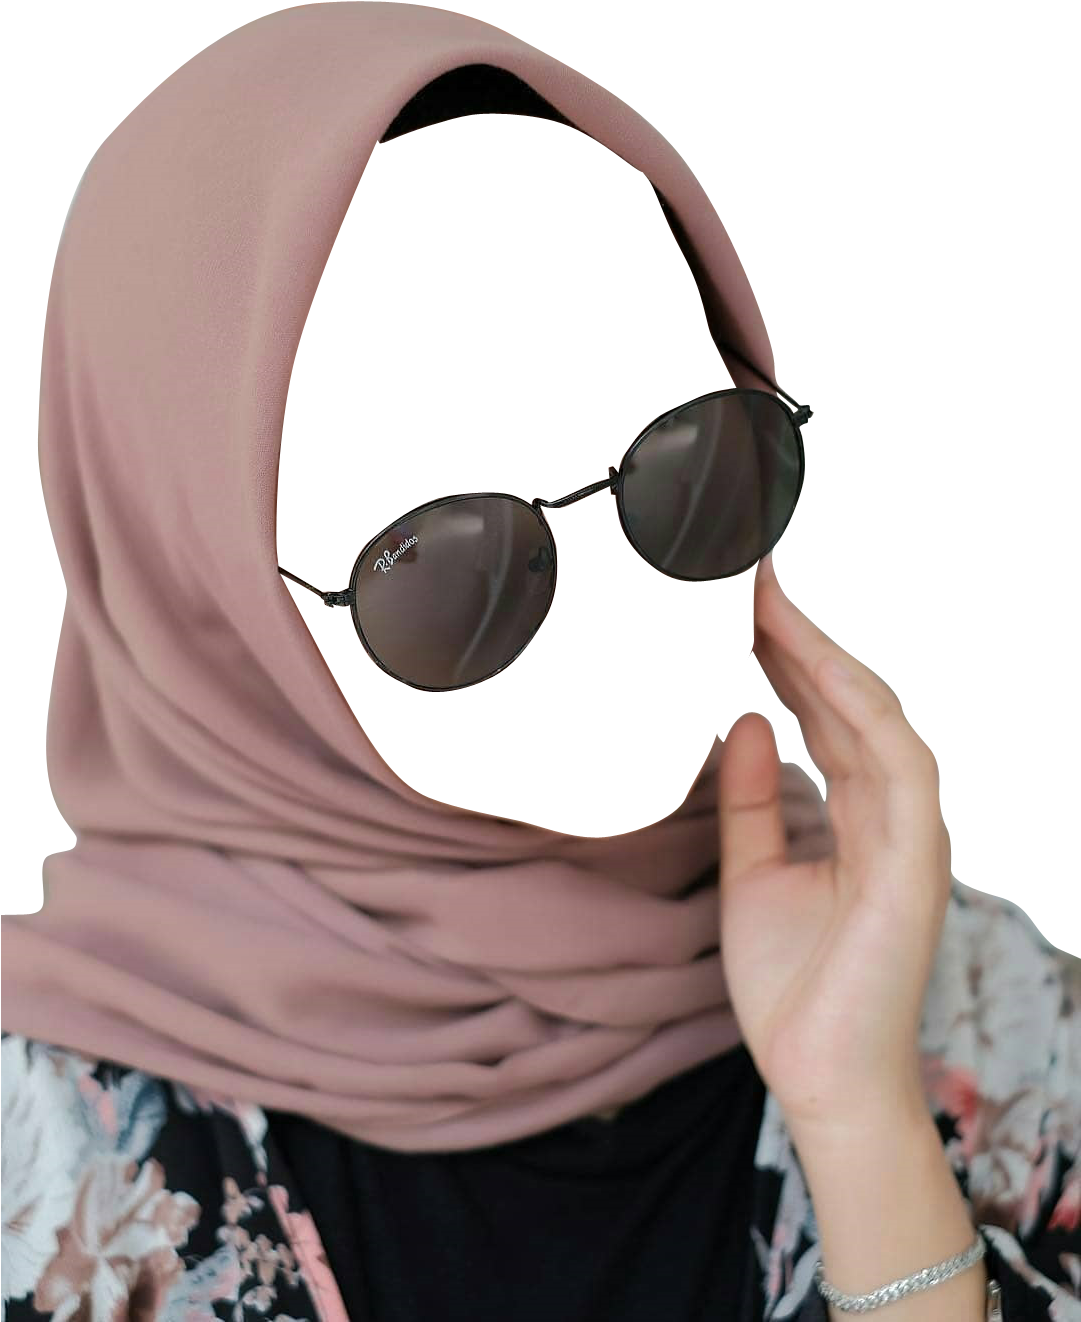 Hijab Png 1081 X 1322